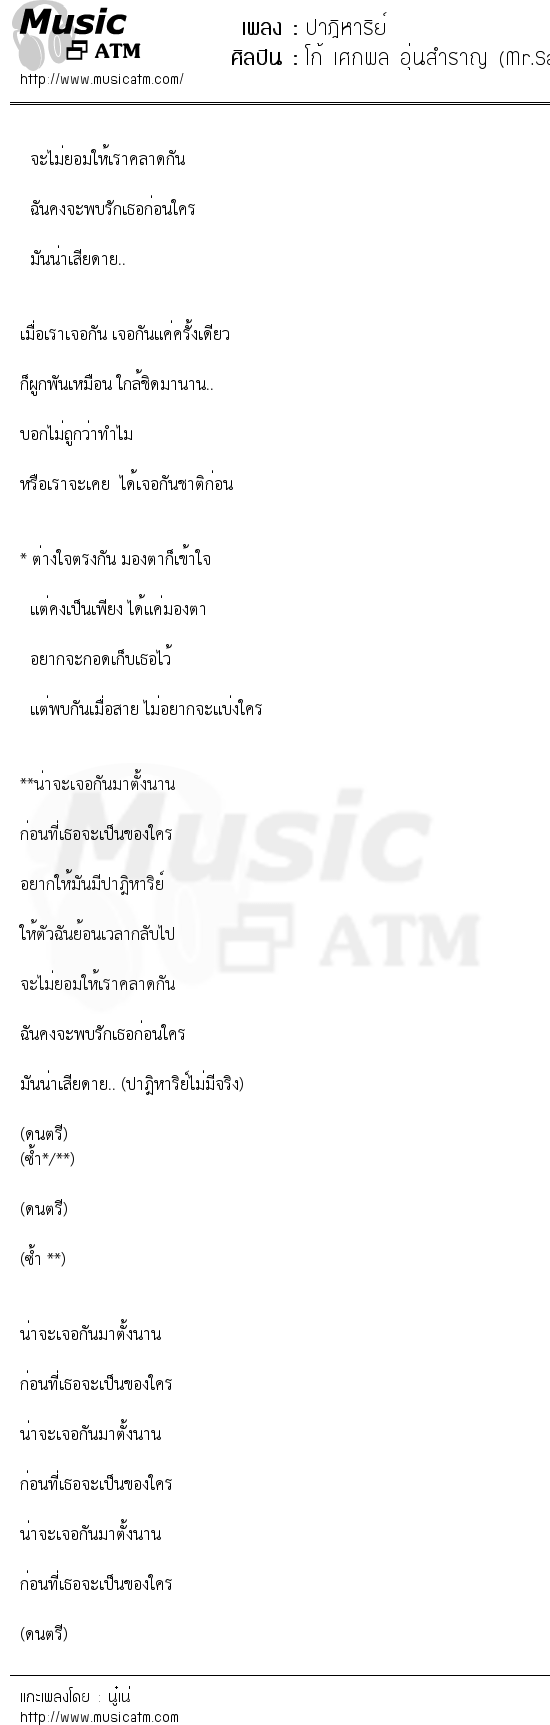 เนื้อเพลง ปาฎิหาริย์ - โก้ เศกพล อุ่นสำราญ (Mr.Saxman) | เพลงไทย